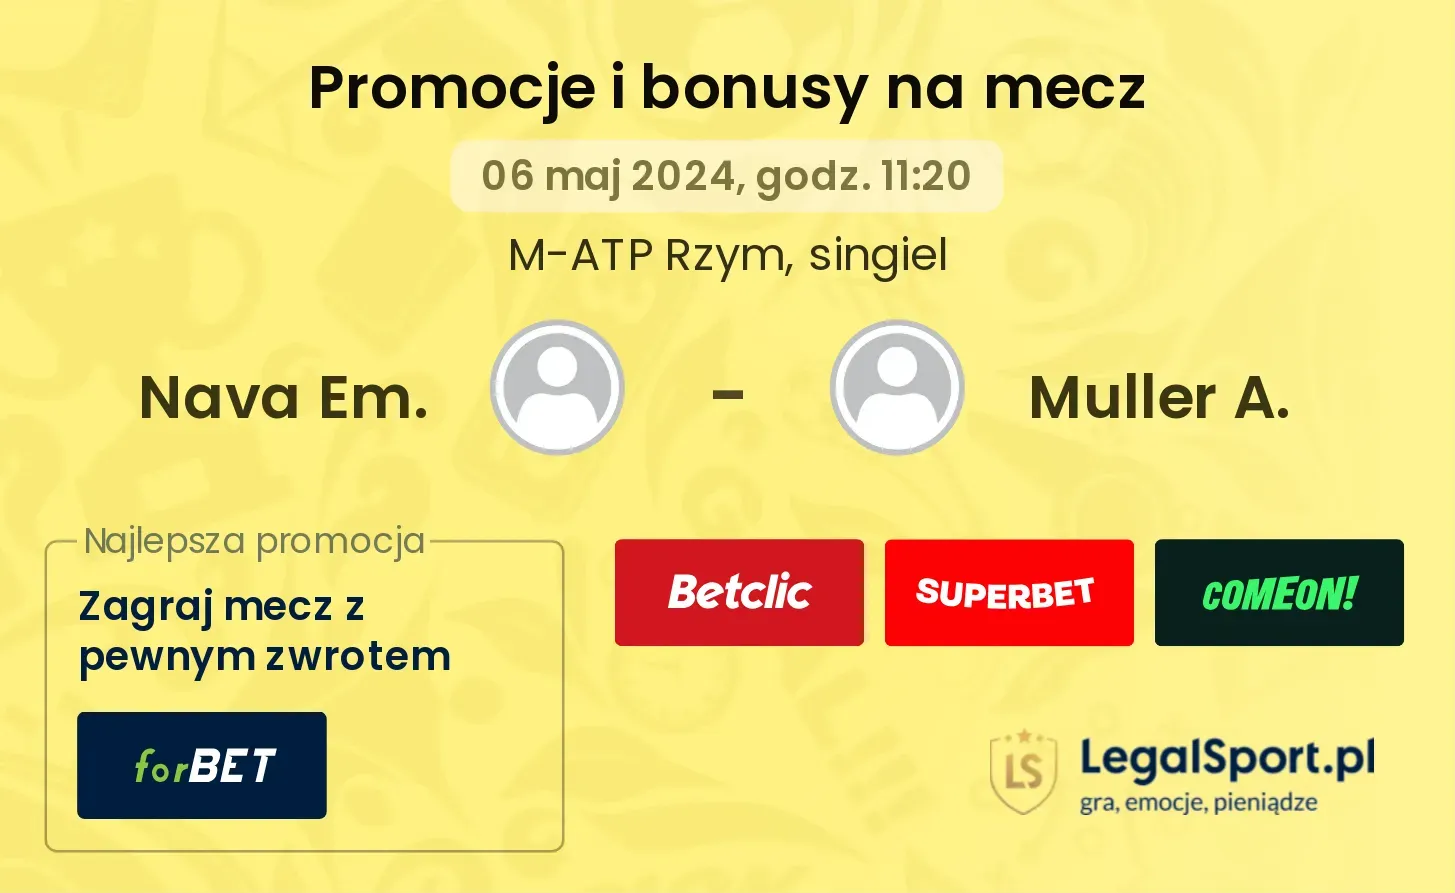 Nava Em. - Muller A. promocje bonusy na mecz